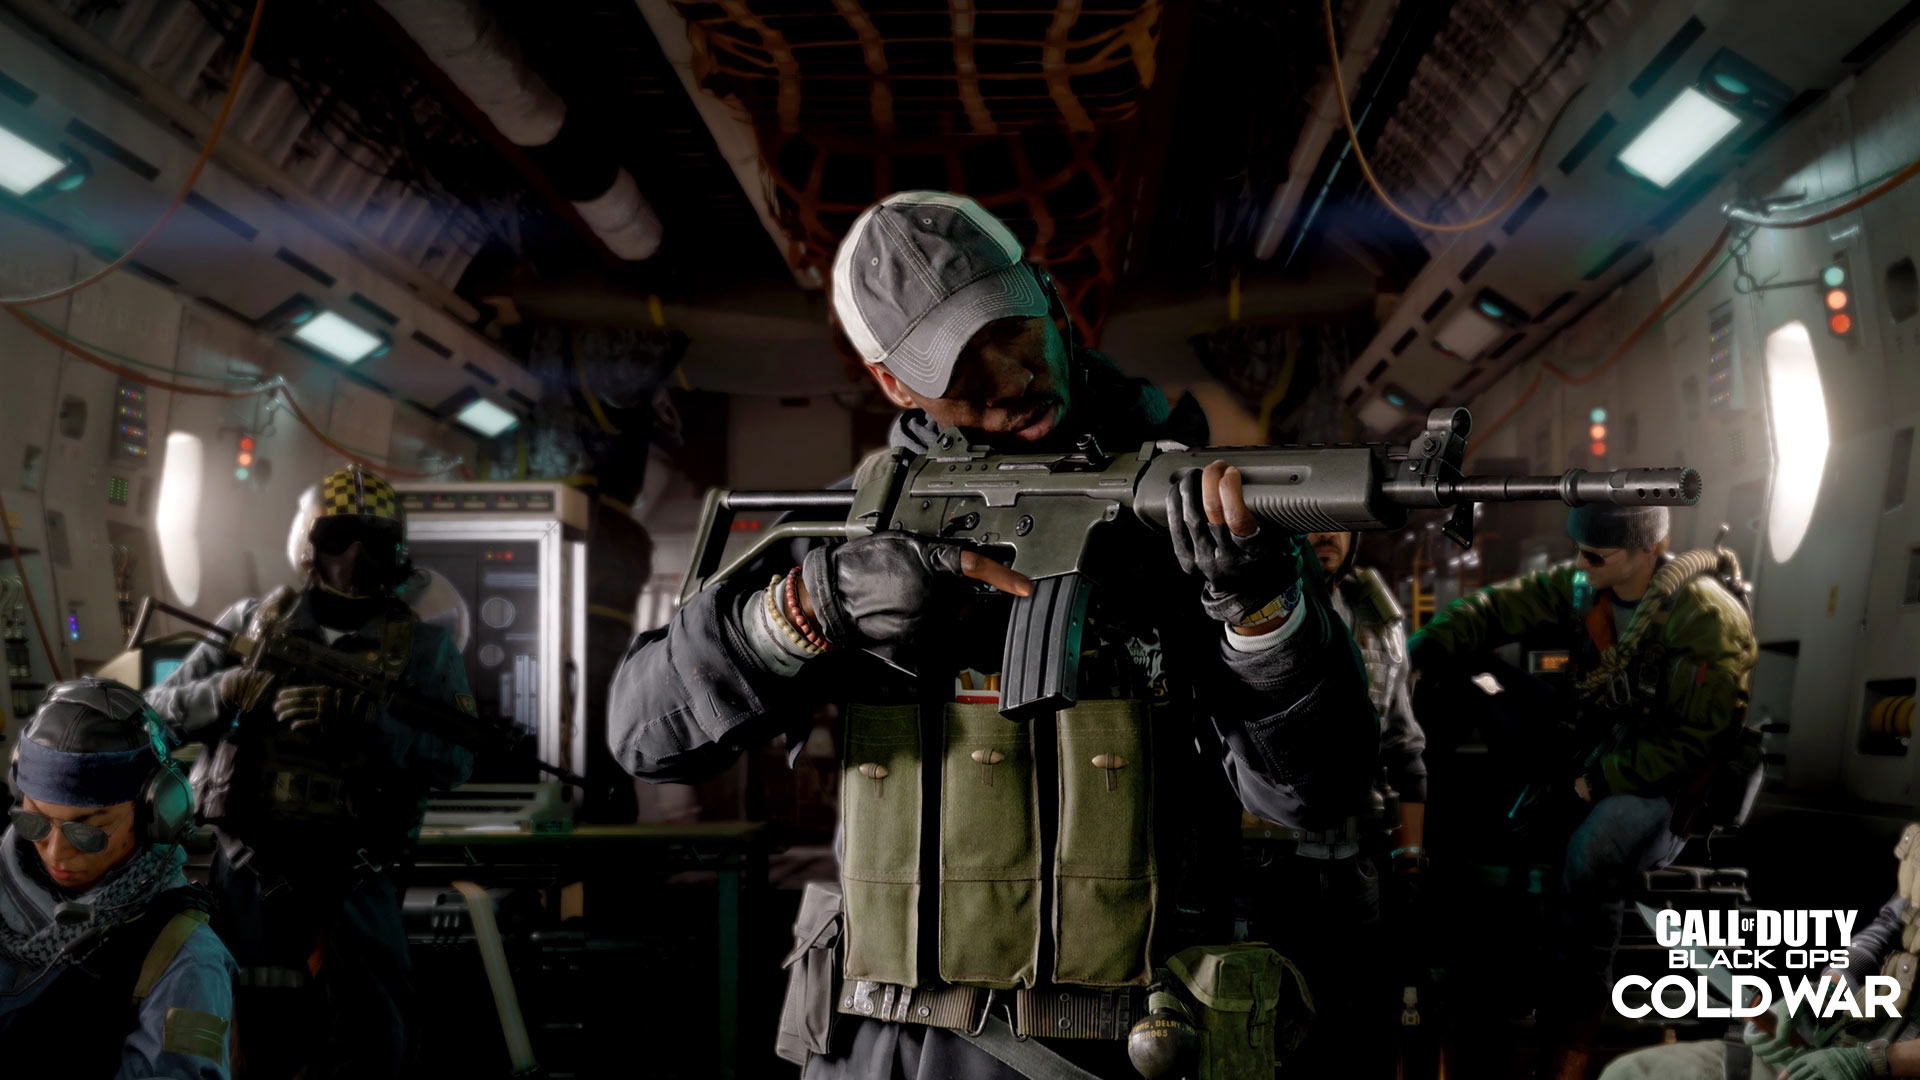 Wir stellen vor: der Mehrspielermodus von Call of Duty®: Black Ops Cold War